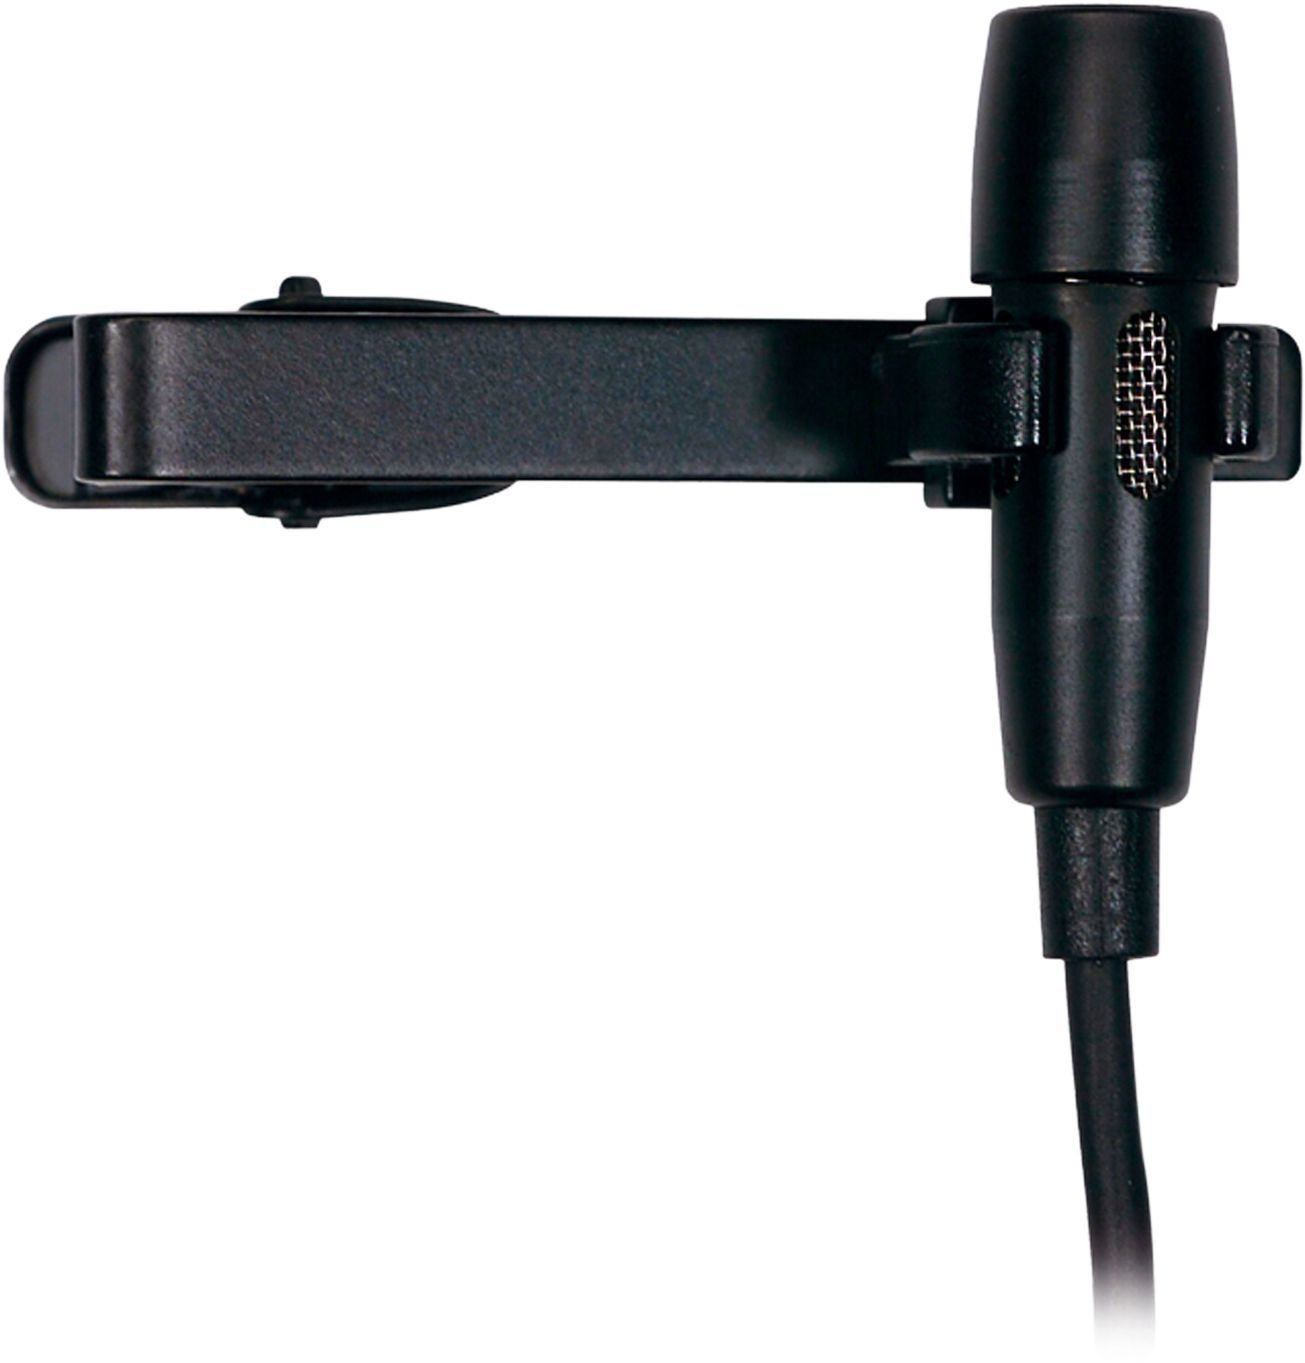 Microfon lavalieră cu condensator AKG CK 99 L Microfon lavalieră cu condensator